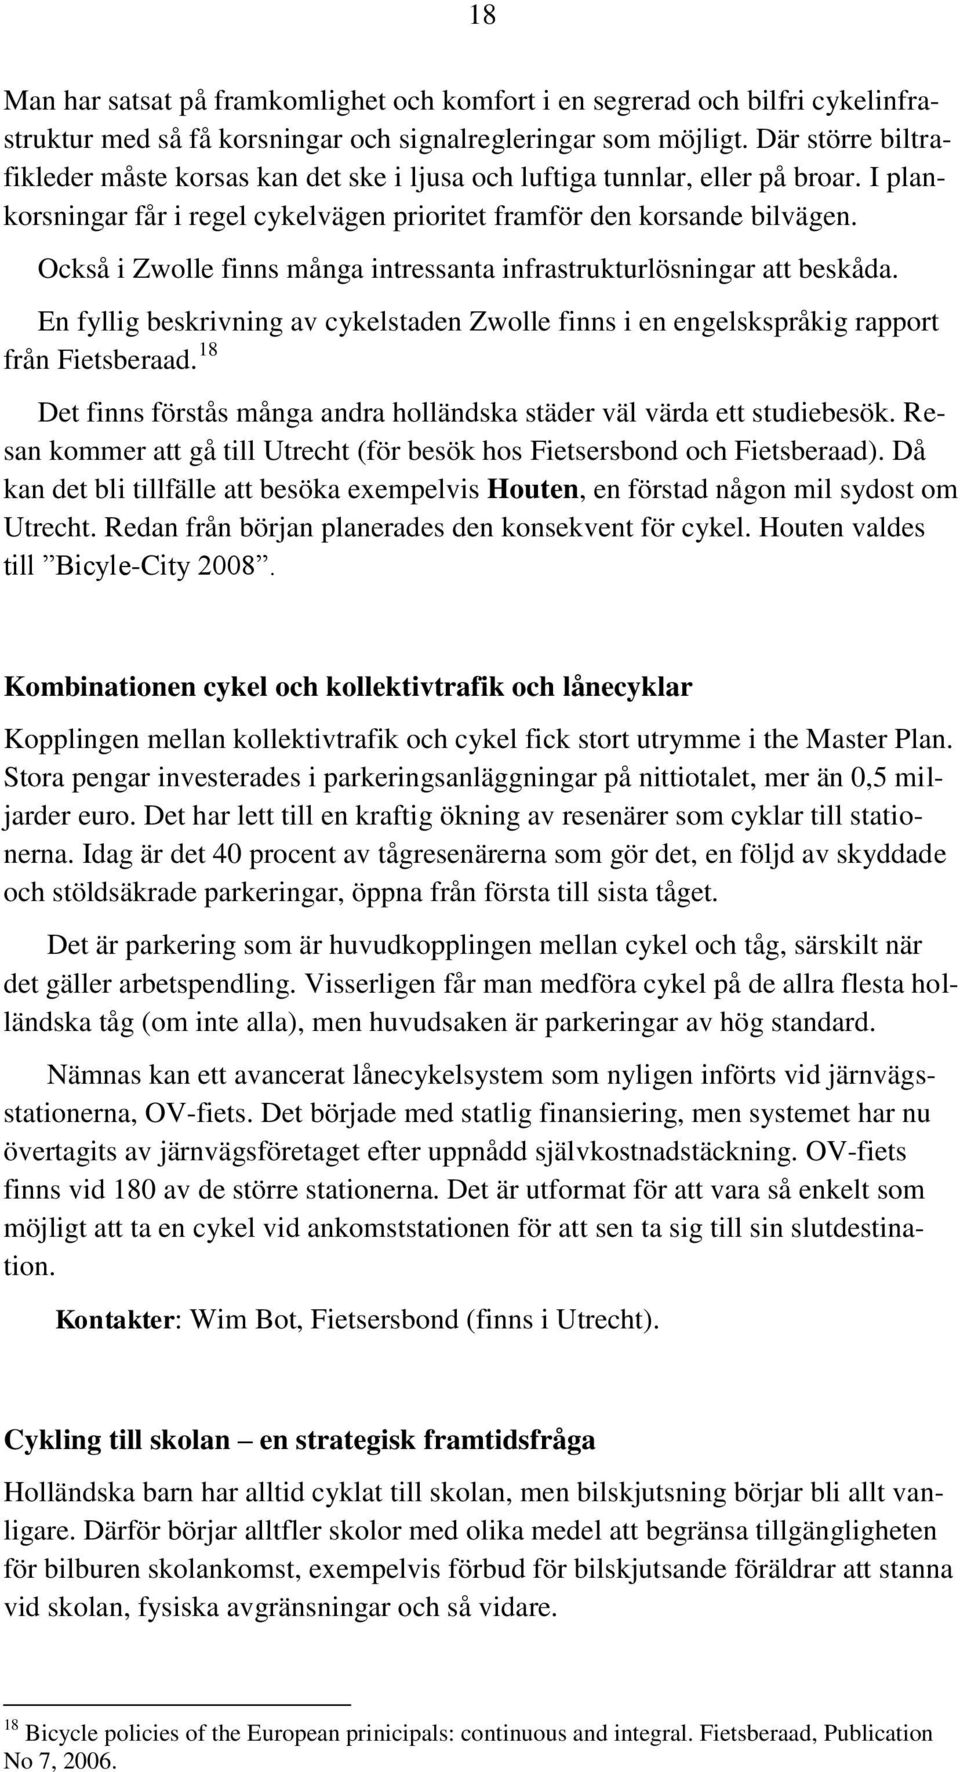 Också i Zwolle finns många intressanta infrastrukturlösningar att beskåda. En fyllig beskrivning av cykelstaden Zwolle finns i en engelskspråkig rapport från Fietsberaad.